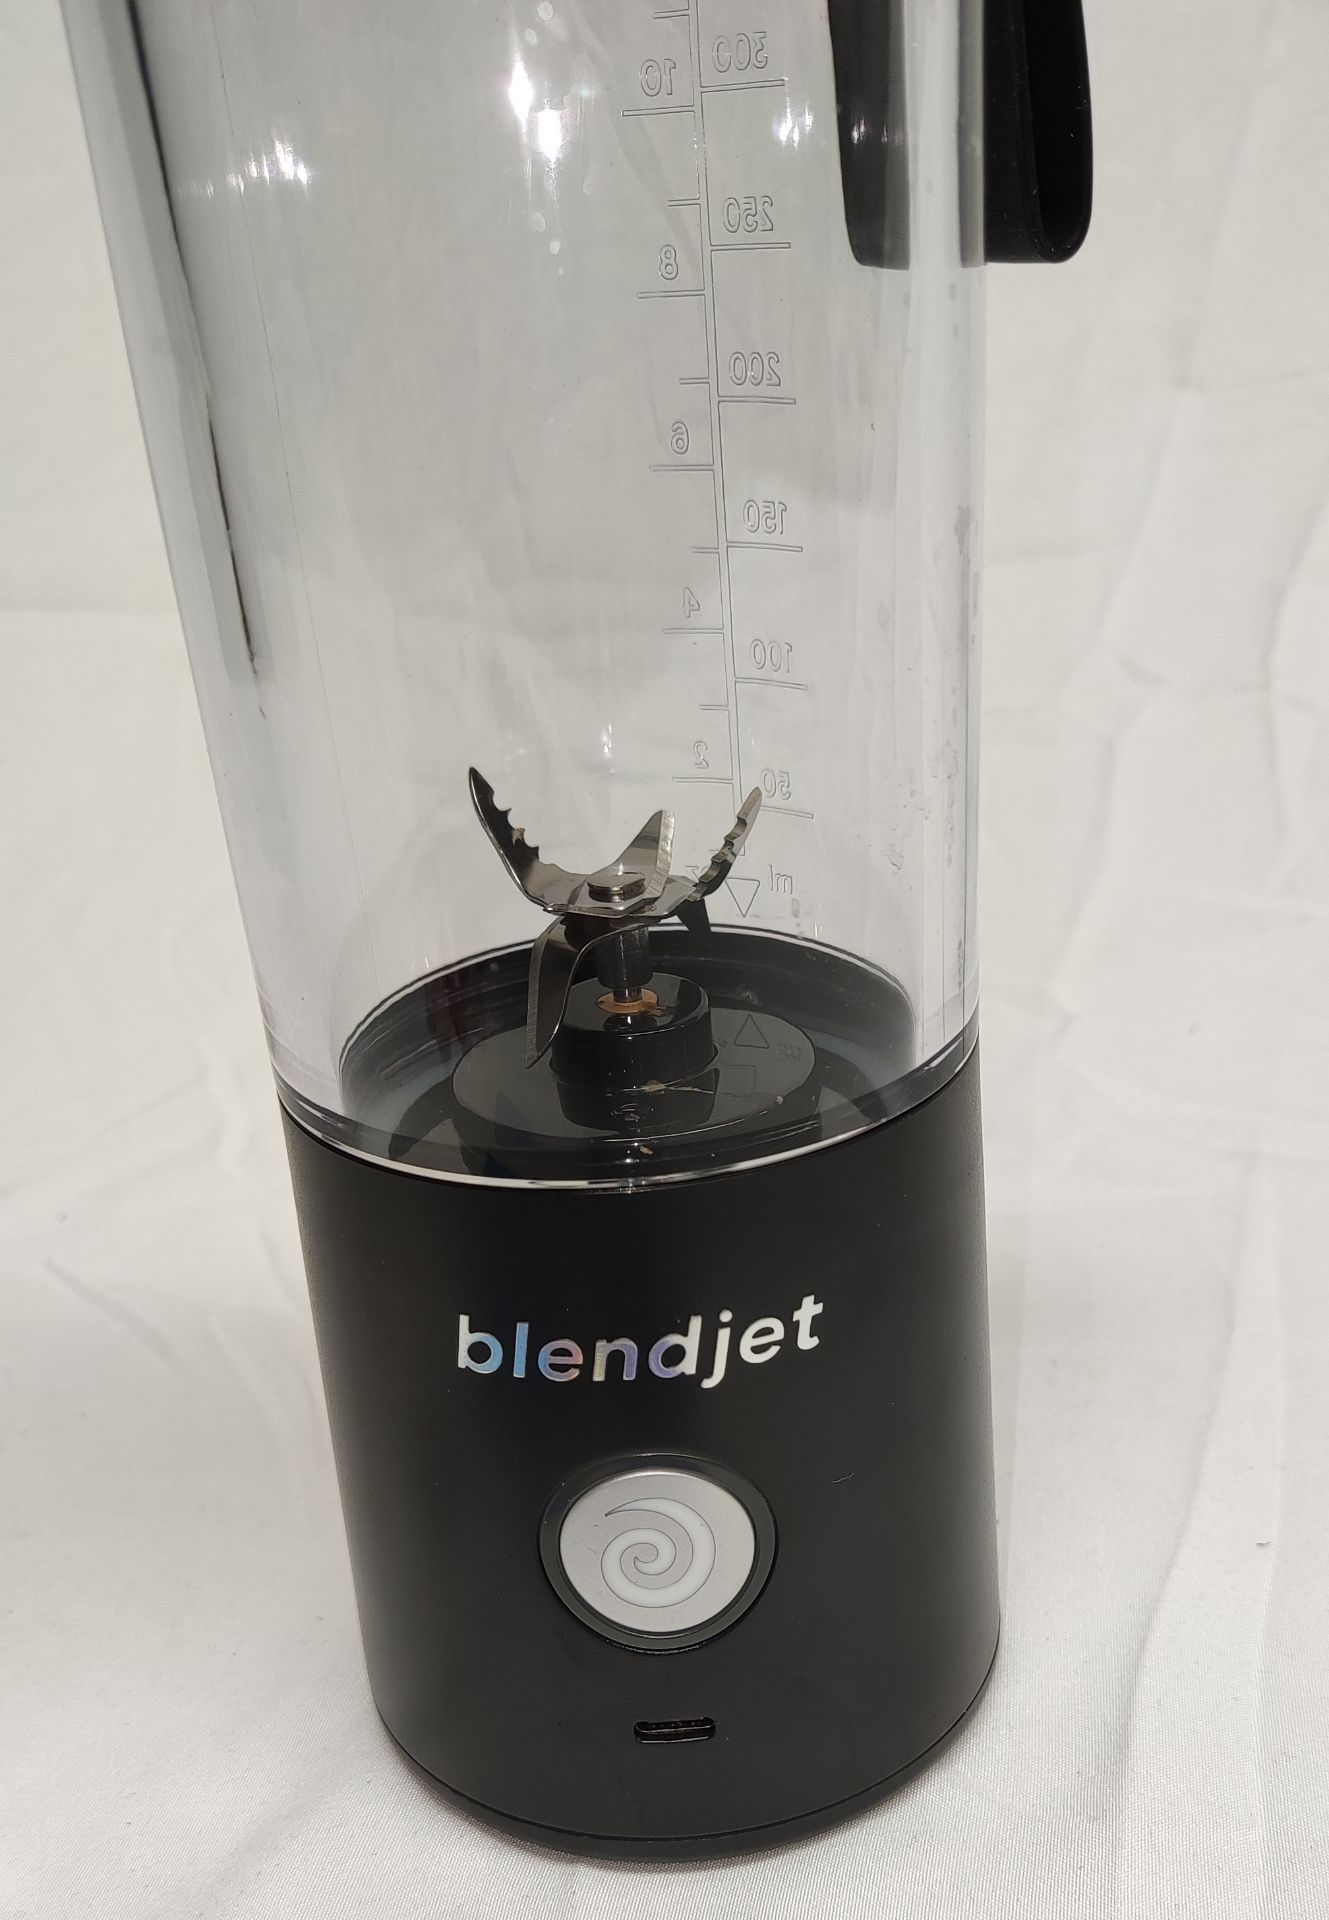 1 x BLENDJET Portable Blender (Blendjet 2) In Black - Original RRP £49.99 - Ref: 7097506/HJL376/ - Image 14 of 14